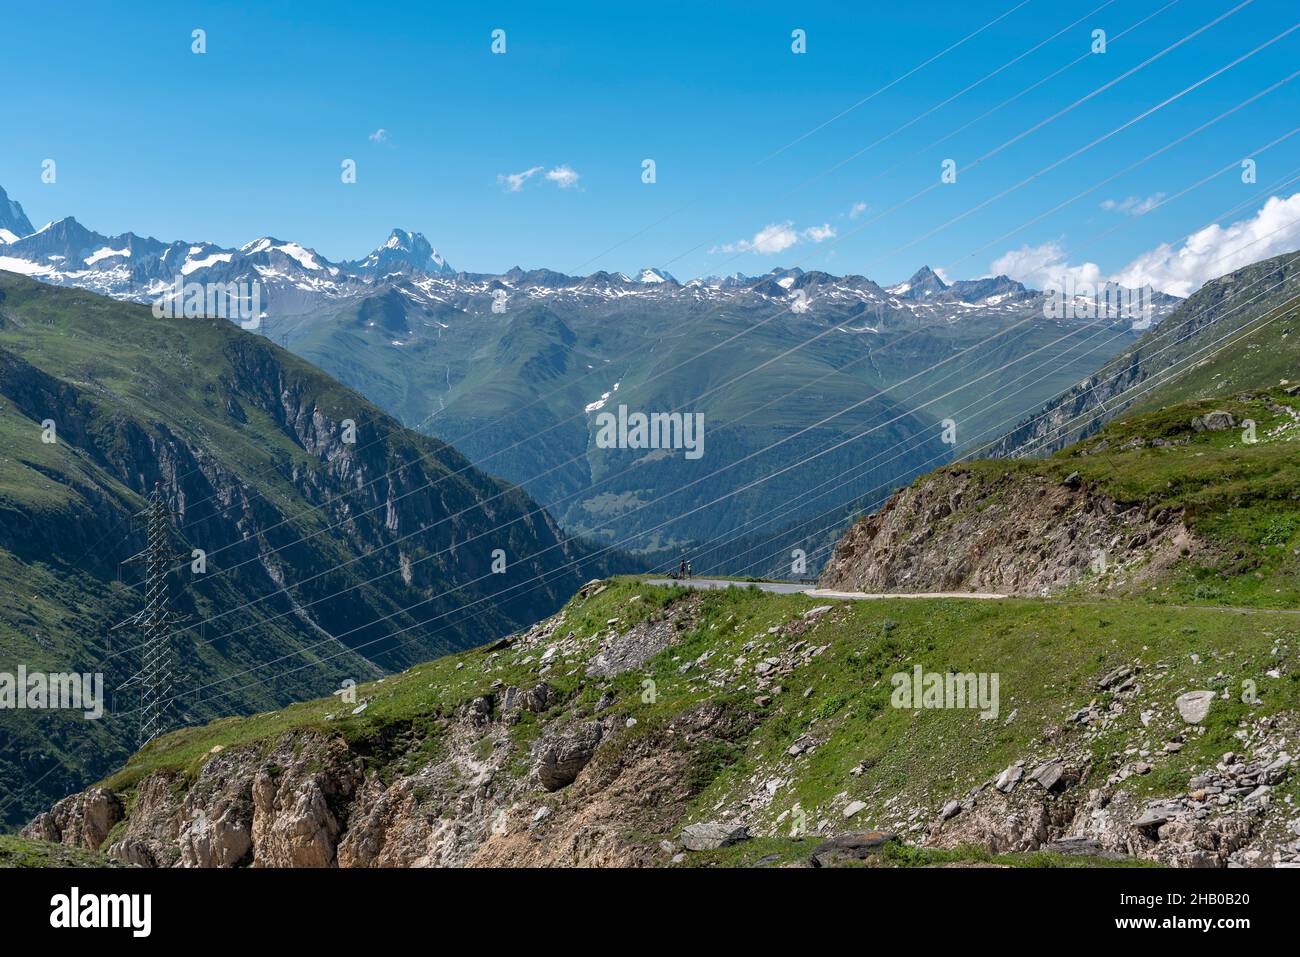 Alpine landscape with Nufenen Pass road, Ulrichen, Valais, Switzerland, Europe Stock Photo